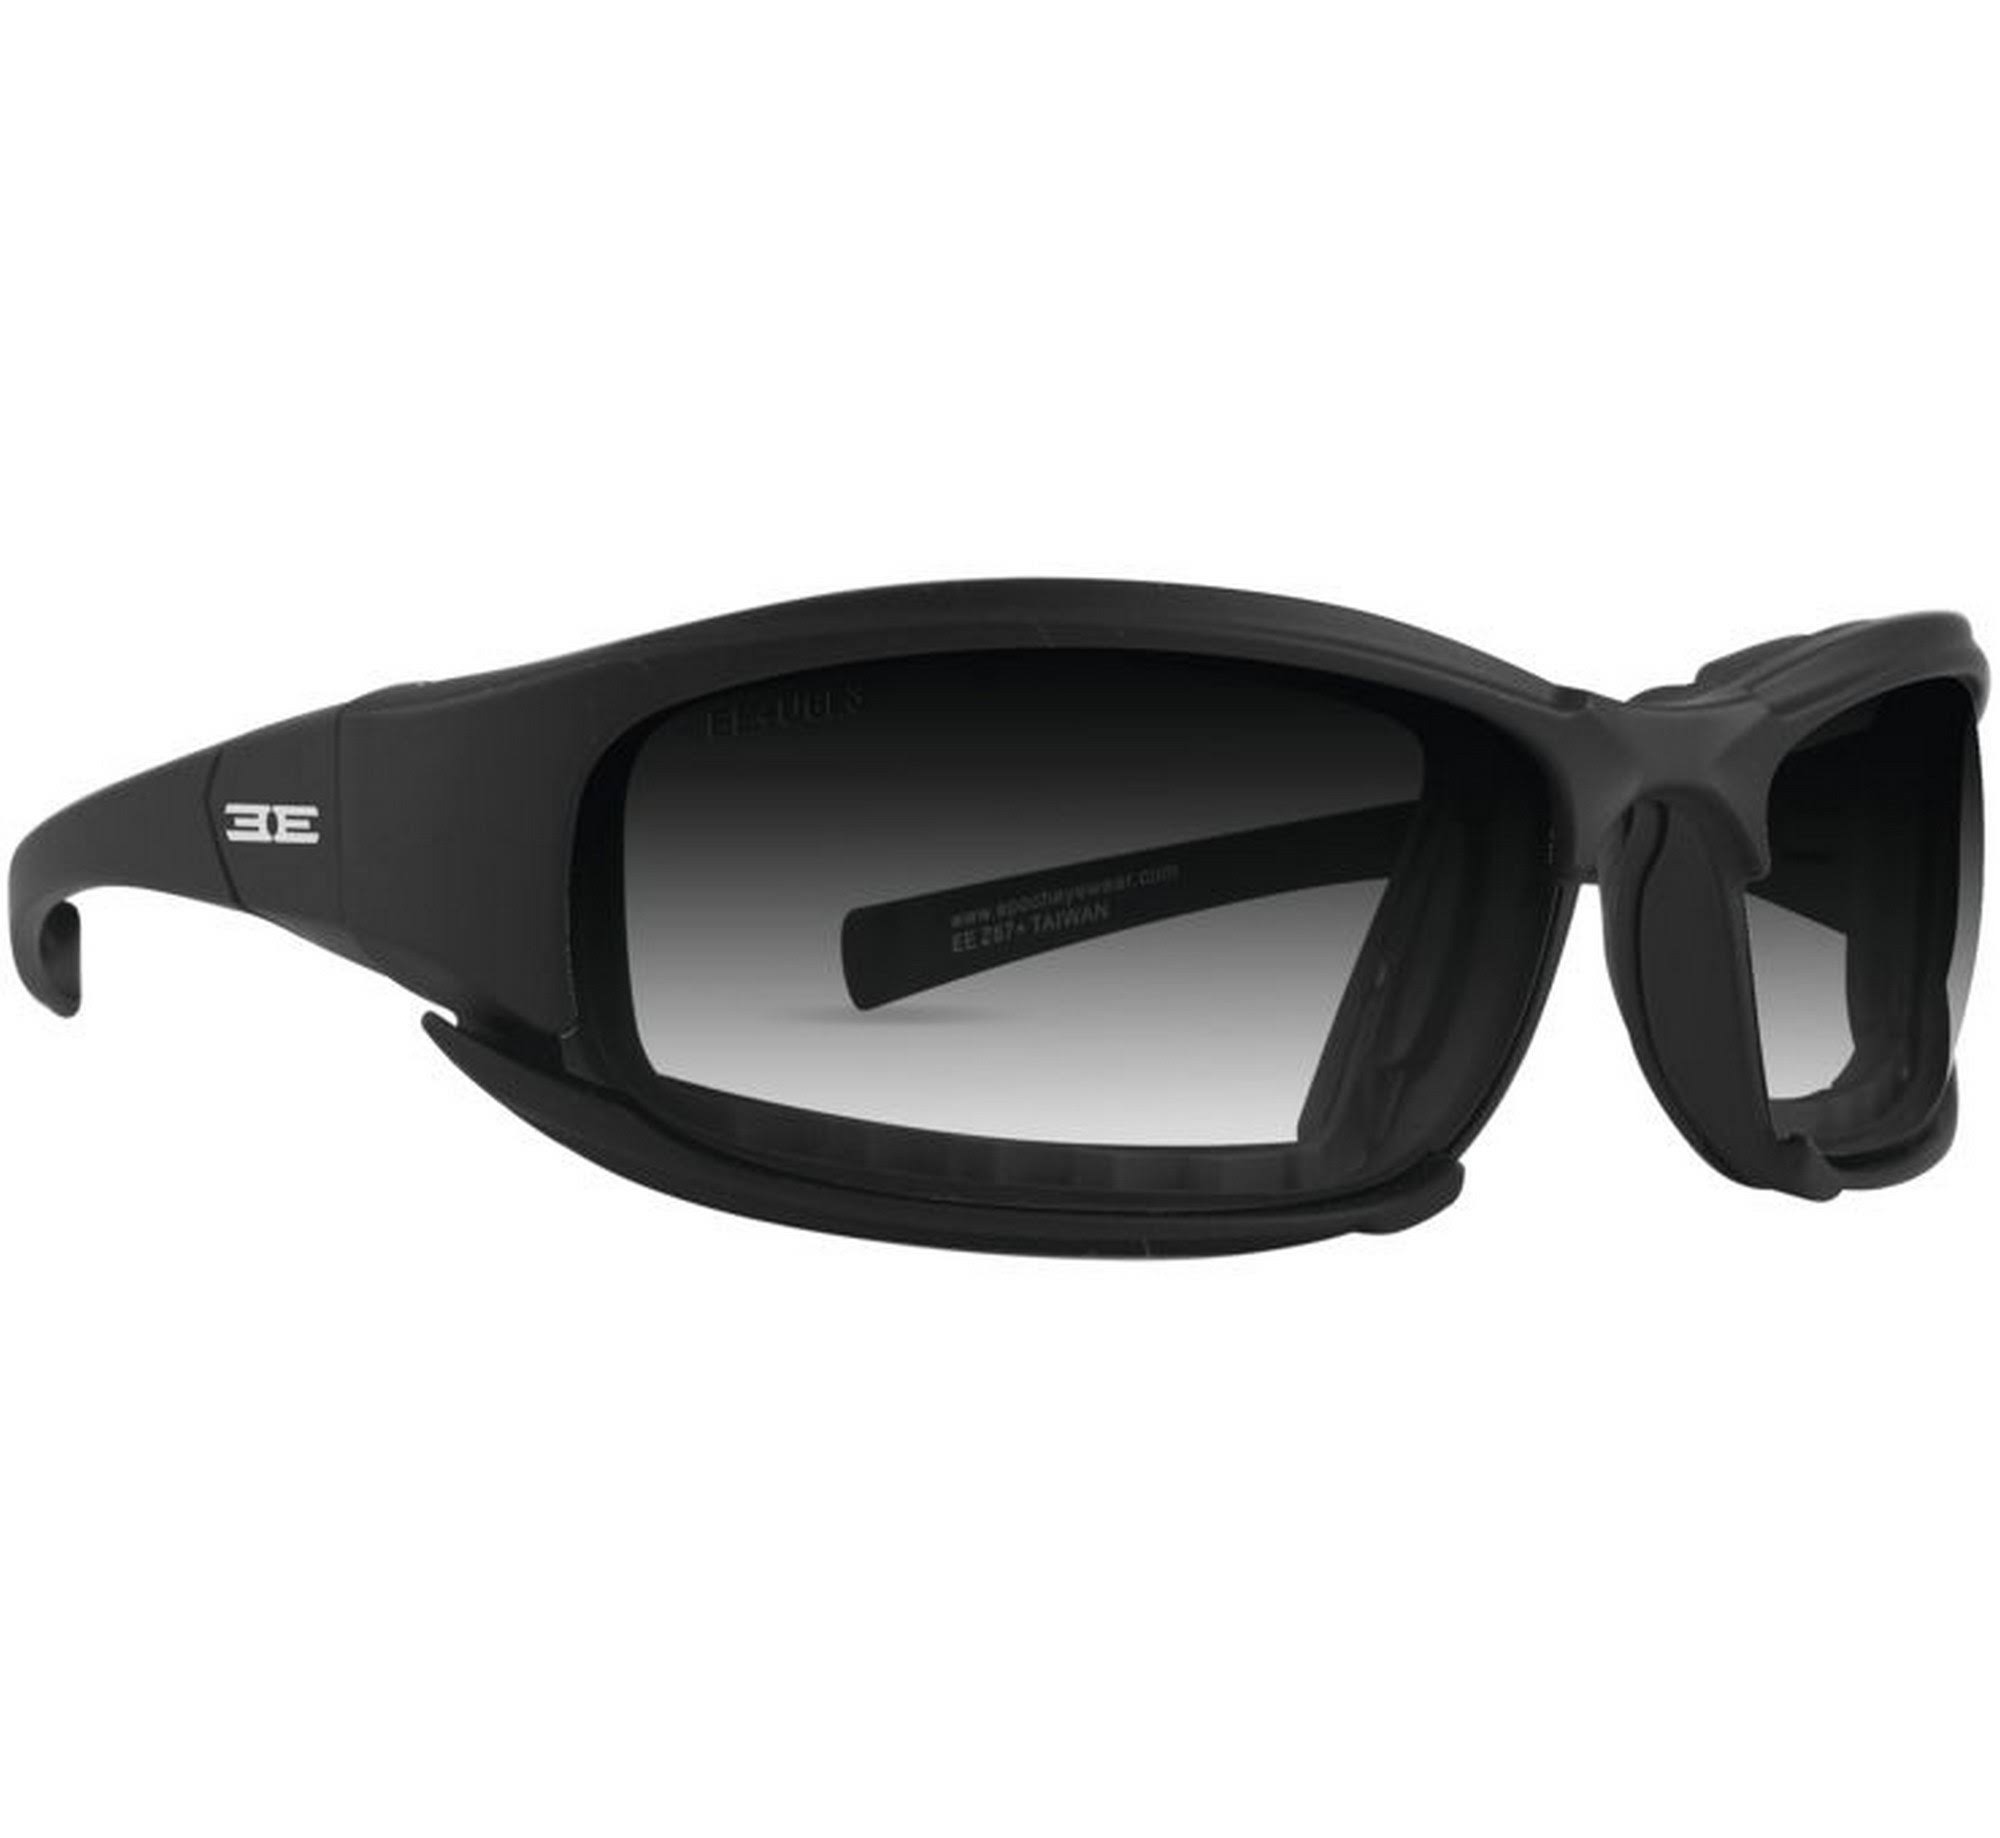 Epoch Eyewear Hybrid Photochromic ANSI Z87.1+ Motorcycle Sunglasses